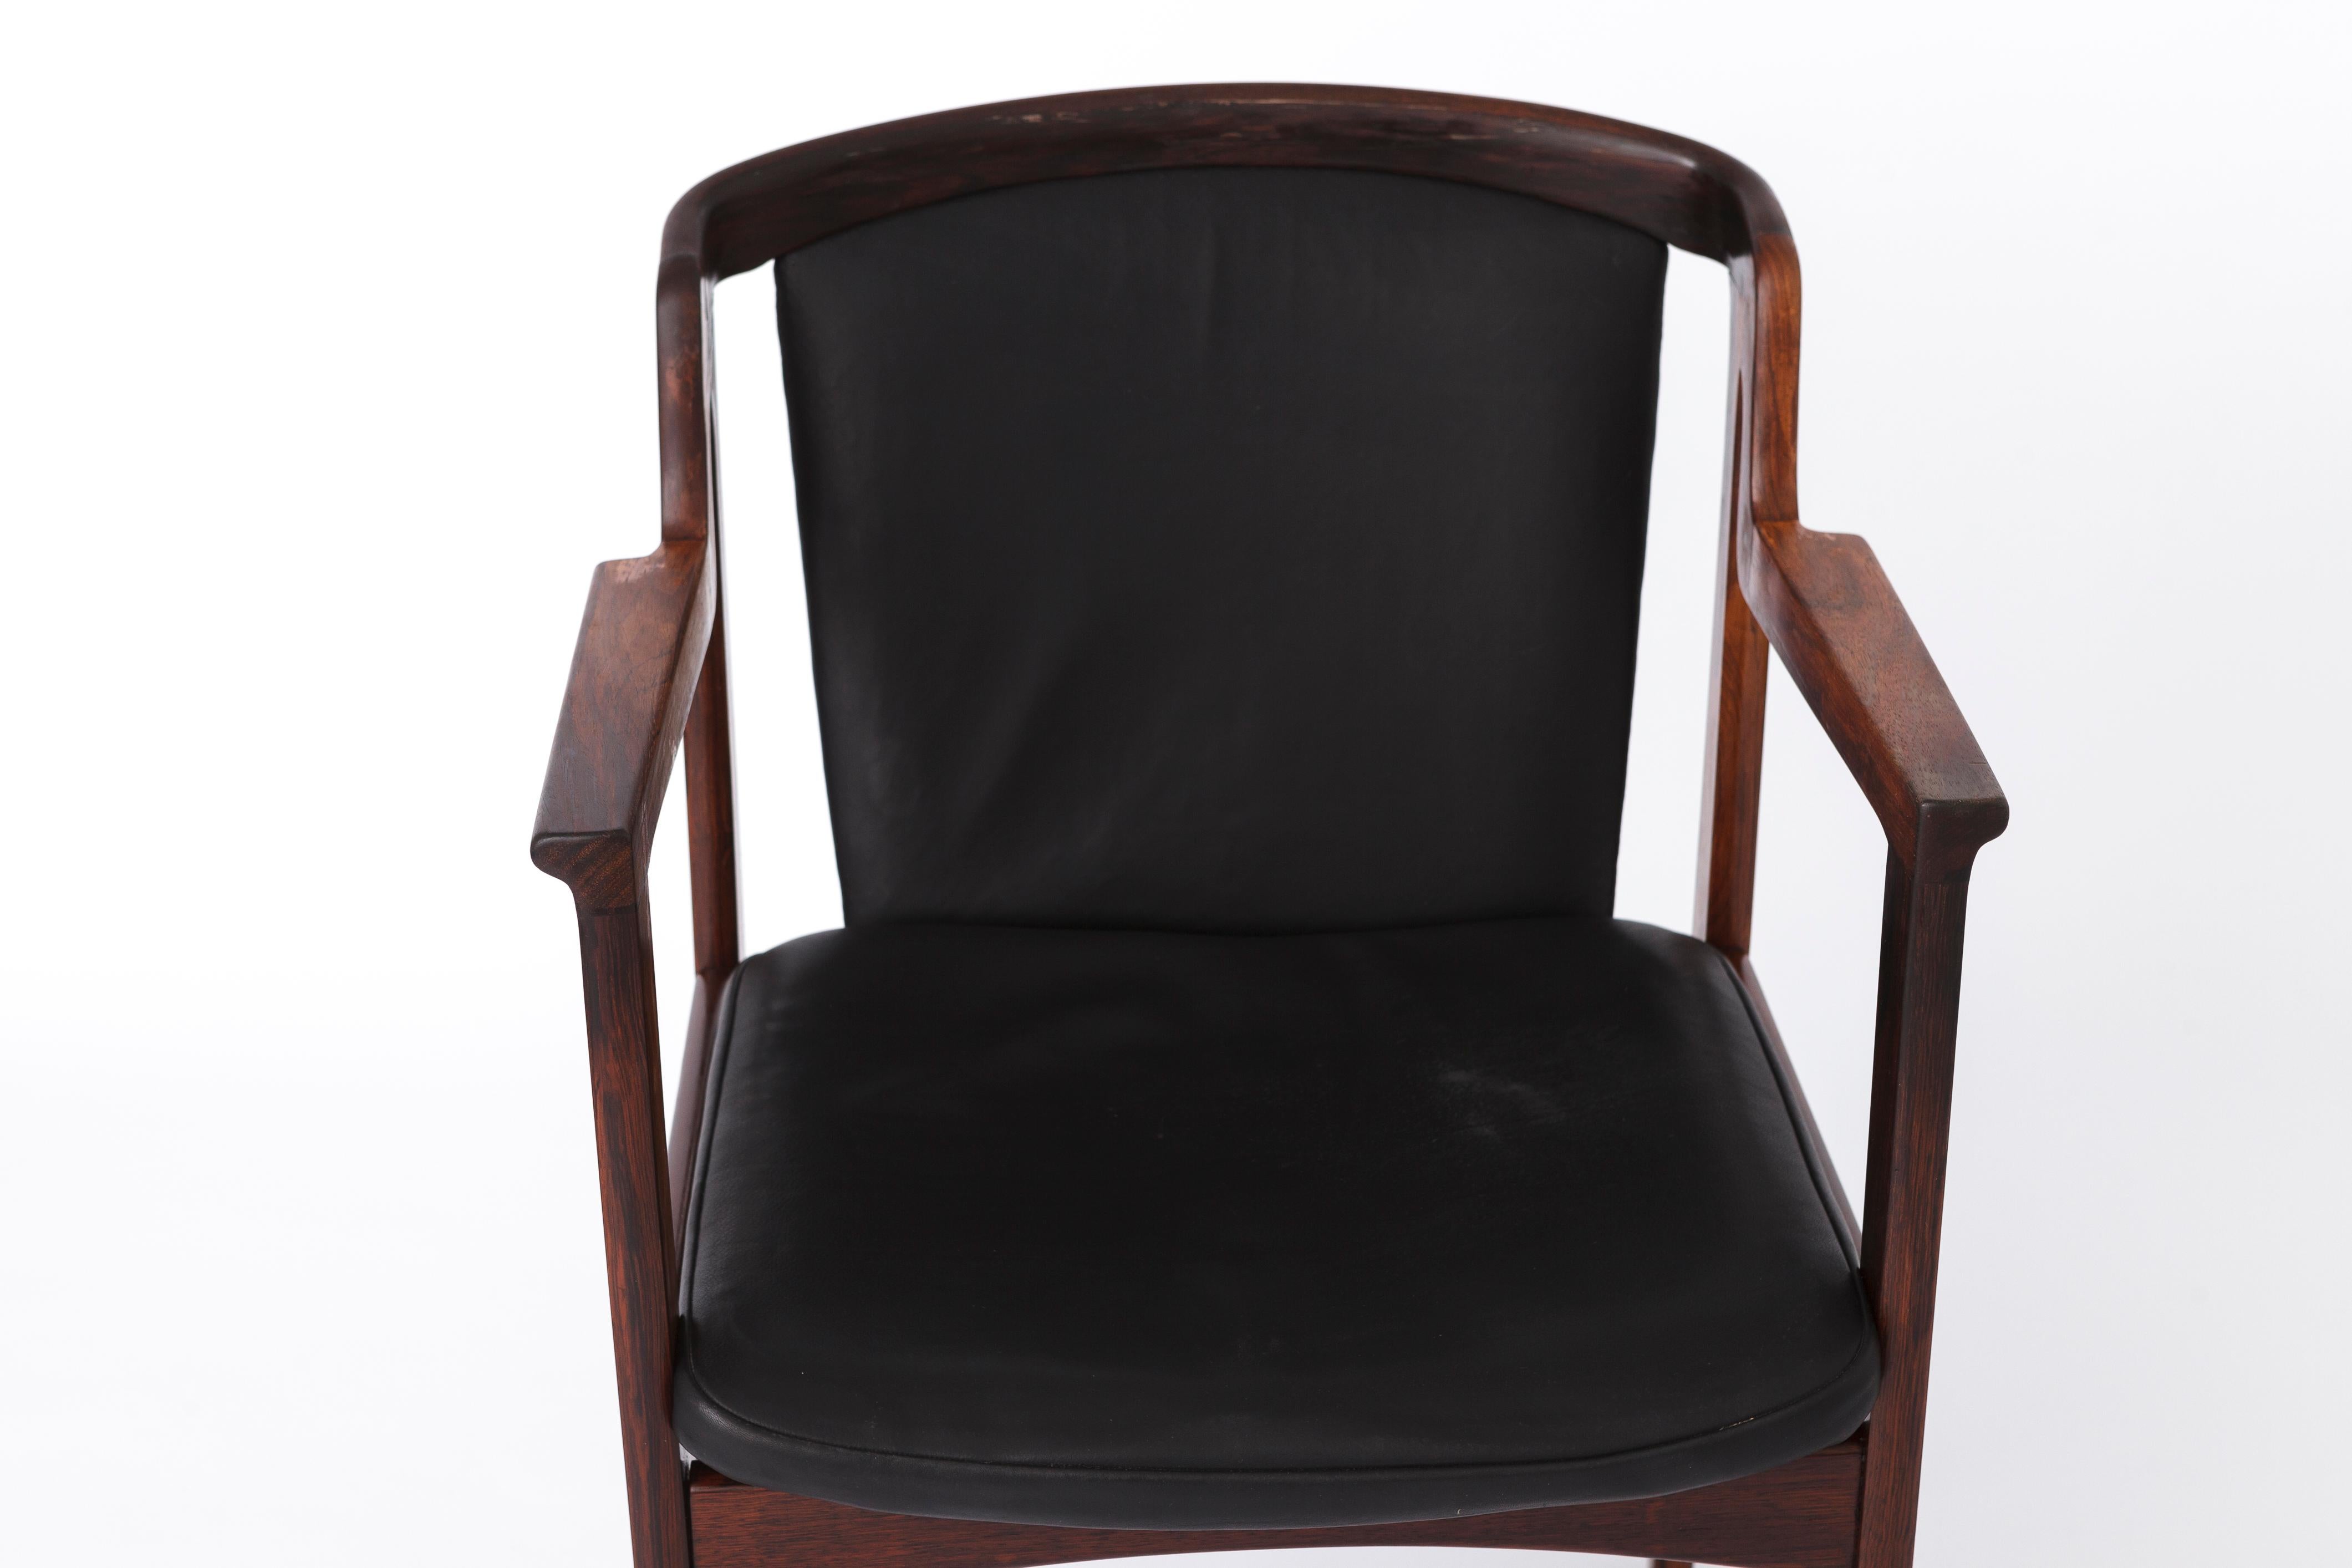 Bonito sillón vintage del diseñador danés Erik Buch para el fabricante Orum Mobler. 
Periodo de producción: 1960s. 
¡Puede utilizarse como silla de comedor o de escritorio!

Buen estado vintage. Tipo de madera Probablemente haya o roble teñidos de